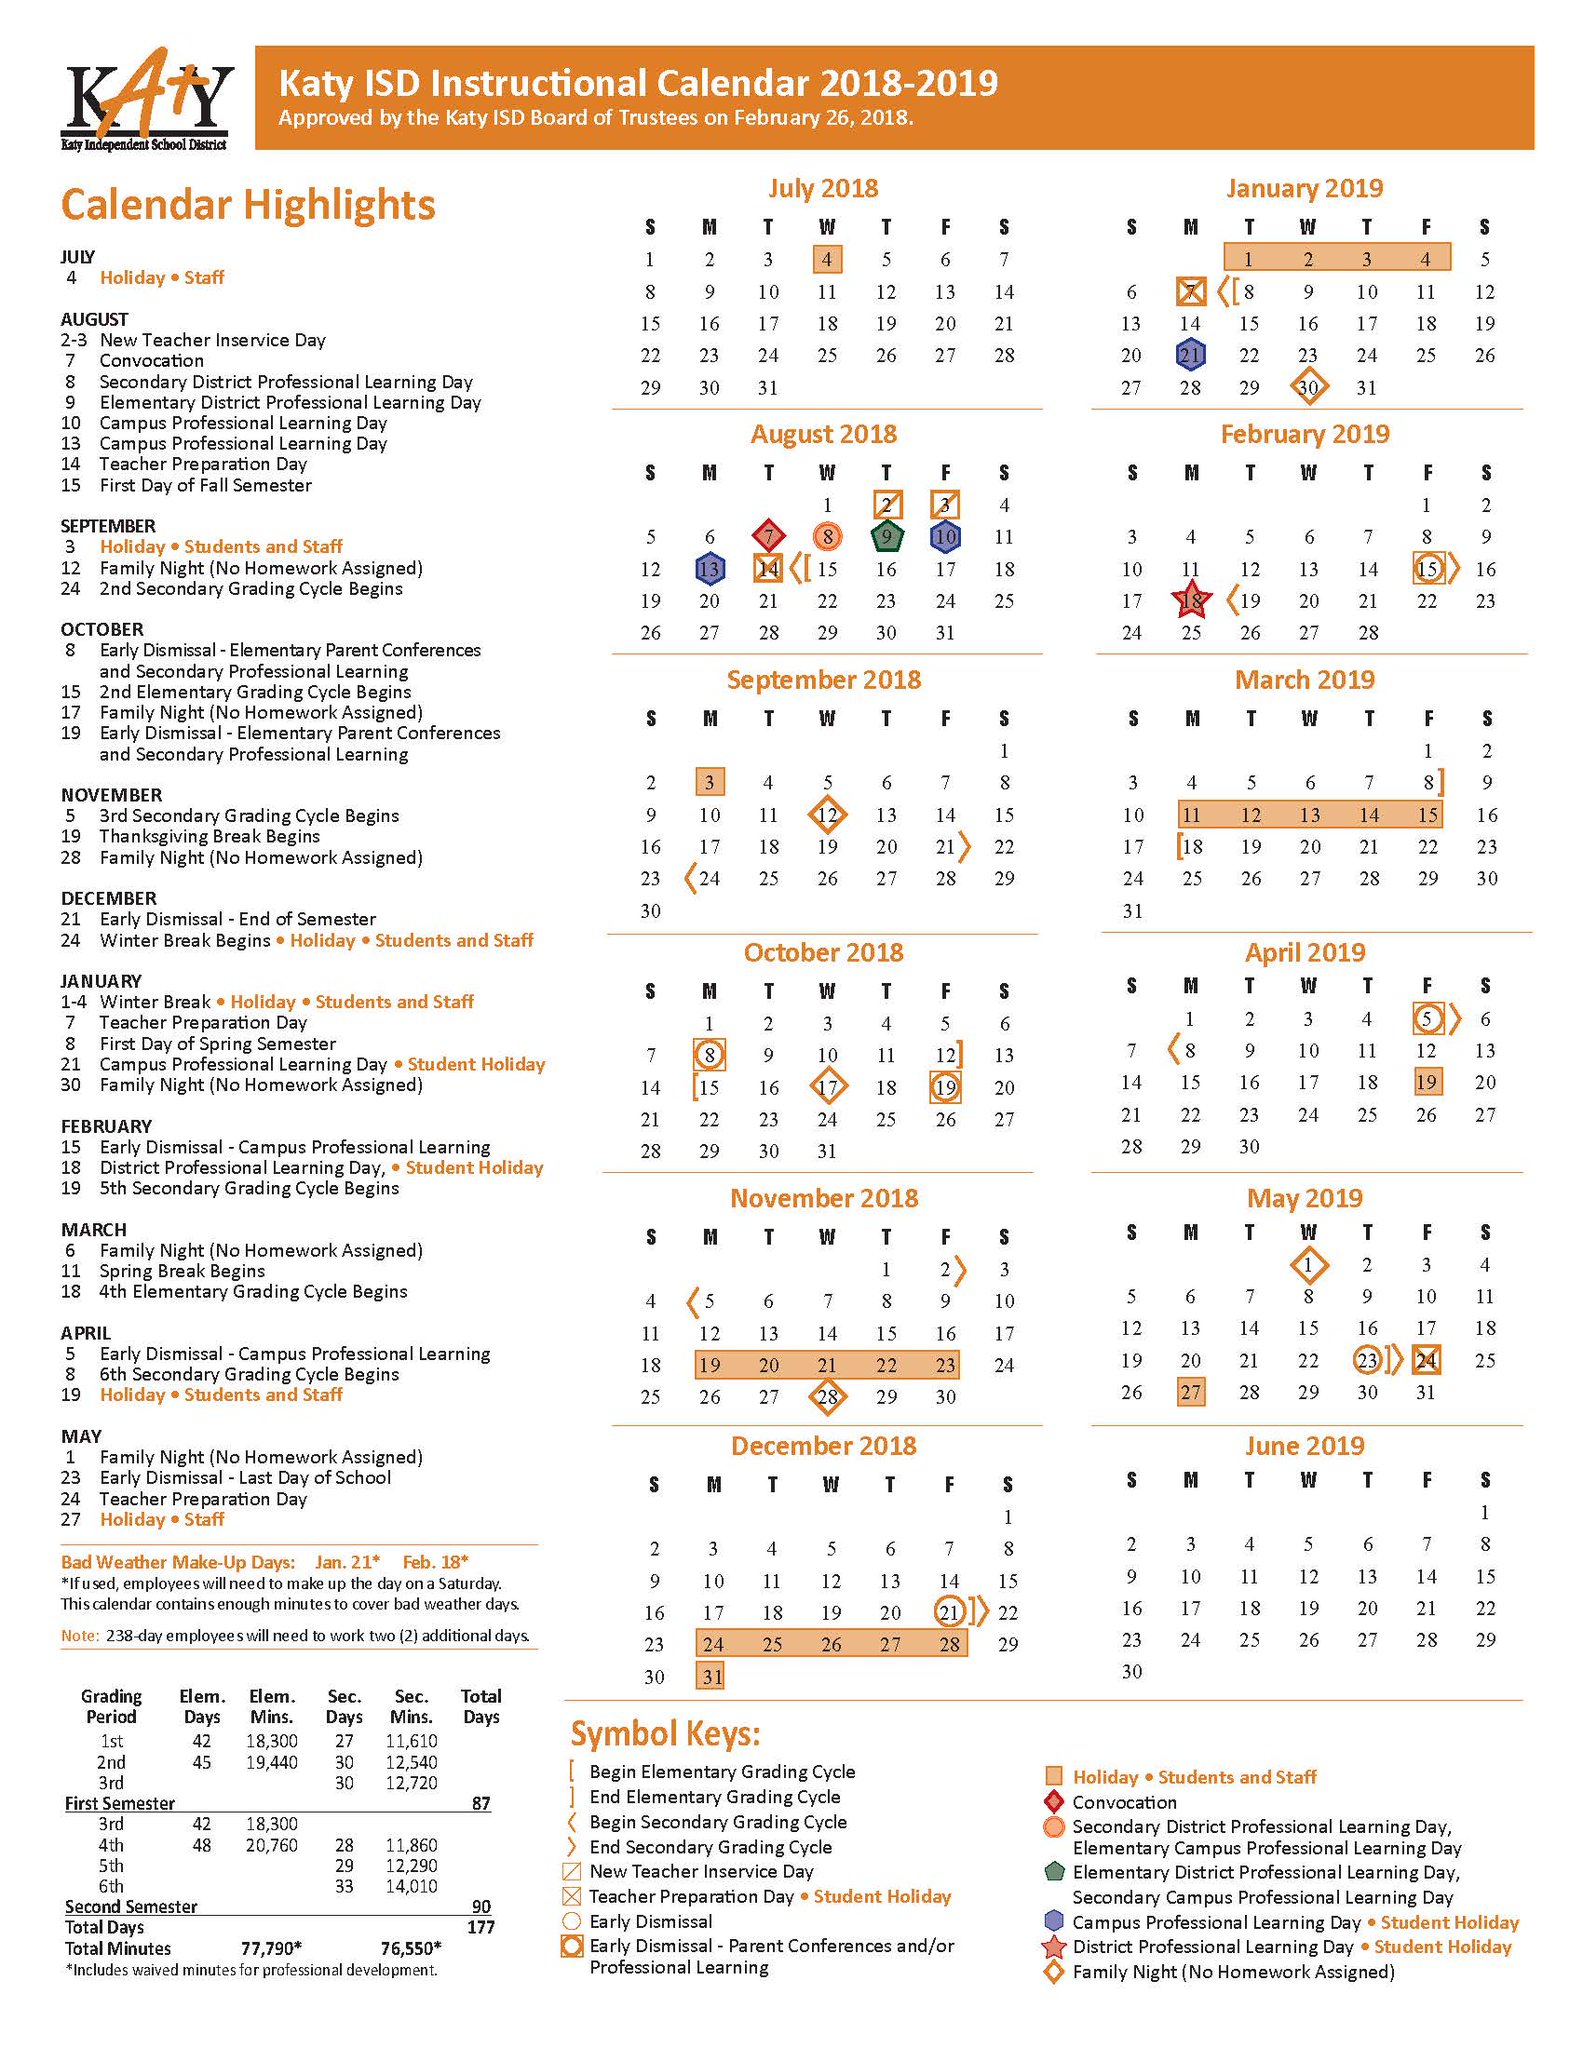 klein-independent-school-district-calendar-2023-2024-pdf